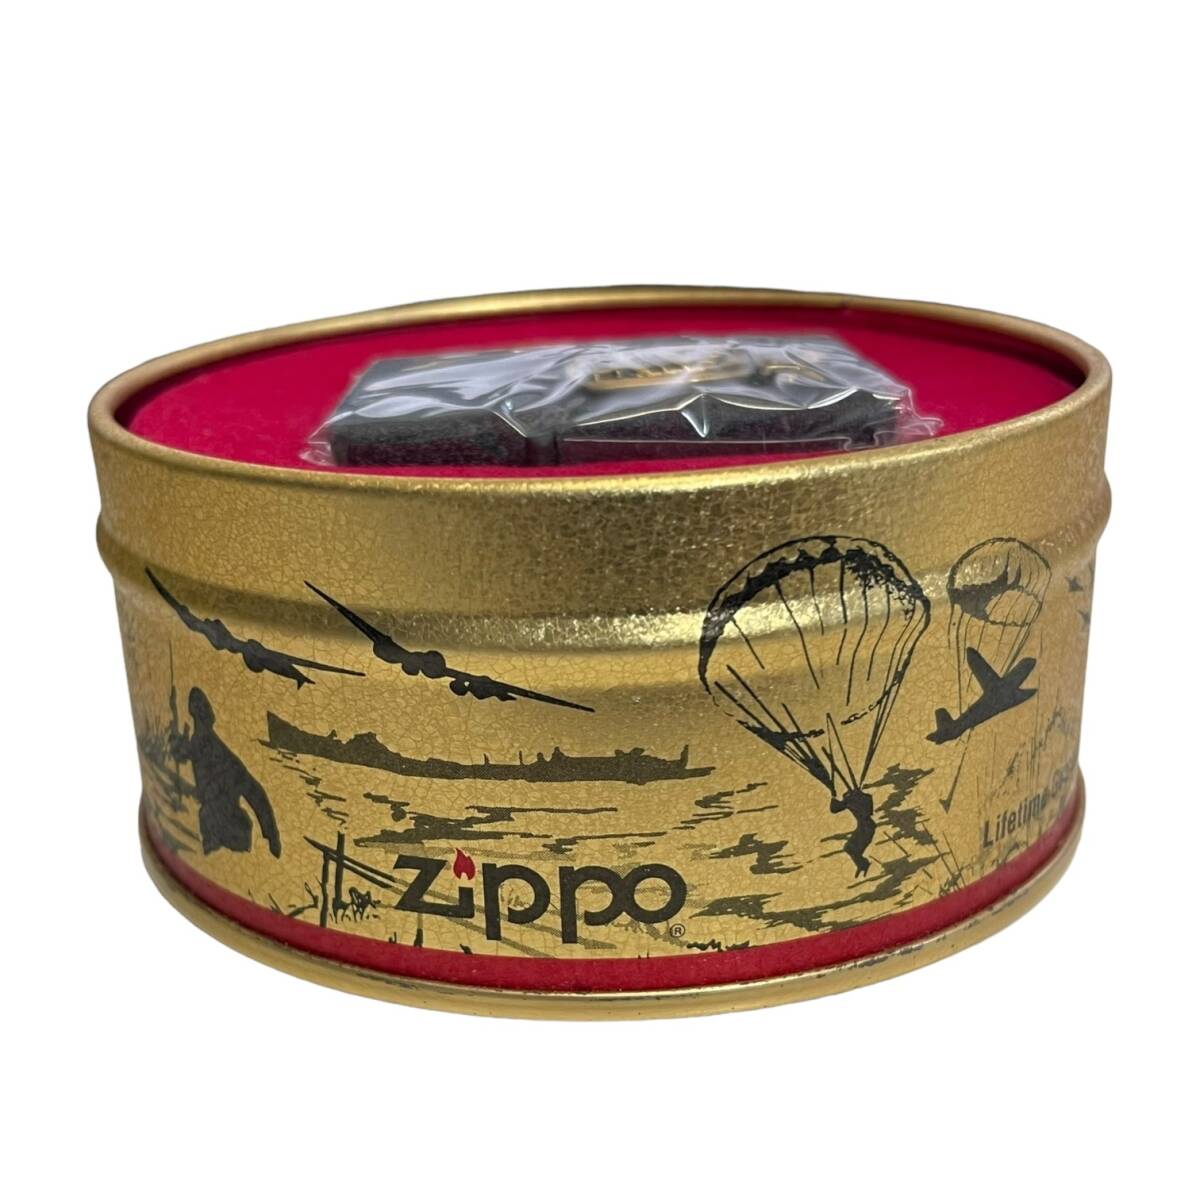 【未使用】ZIPPO ジッポ D-DAY 1944 1994 NORMANDY 50 YEARS ノルマンディー 上陸作戦 50周年 缶入り L64949RL_画像3